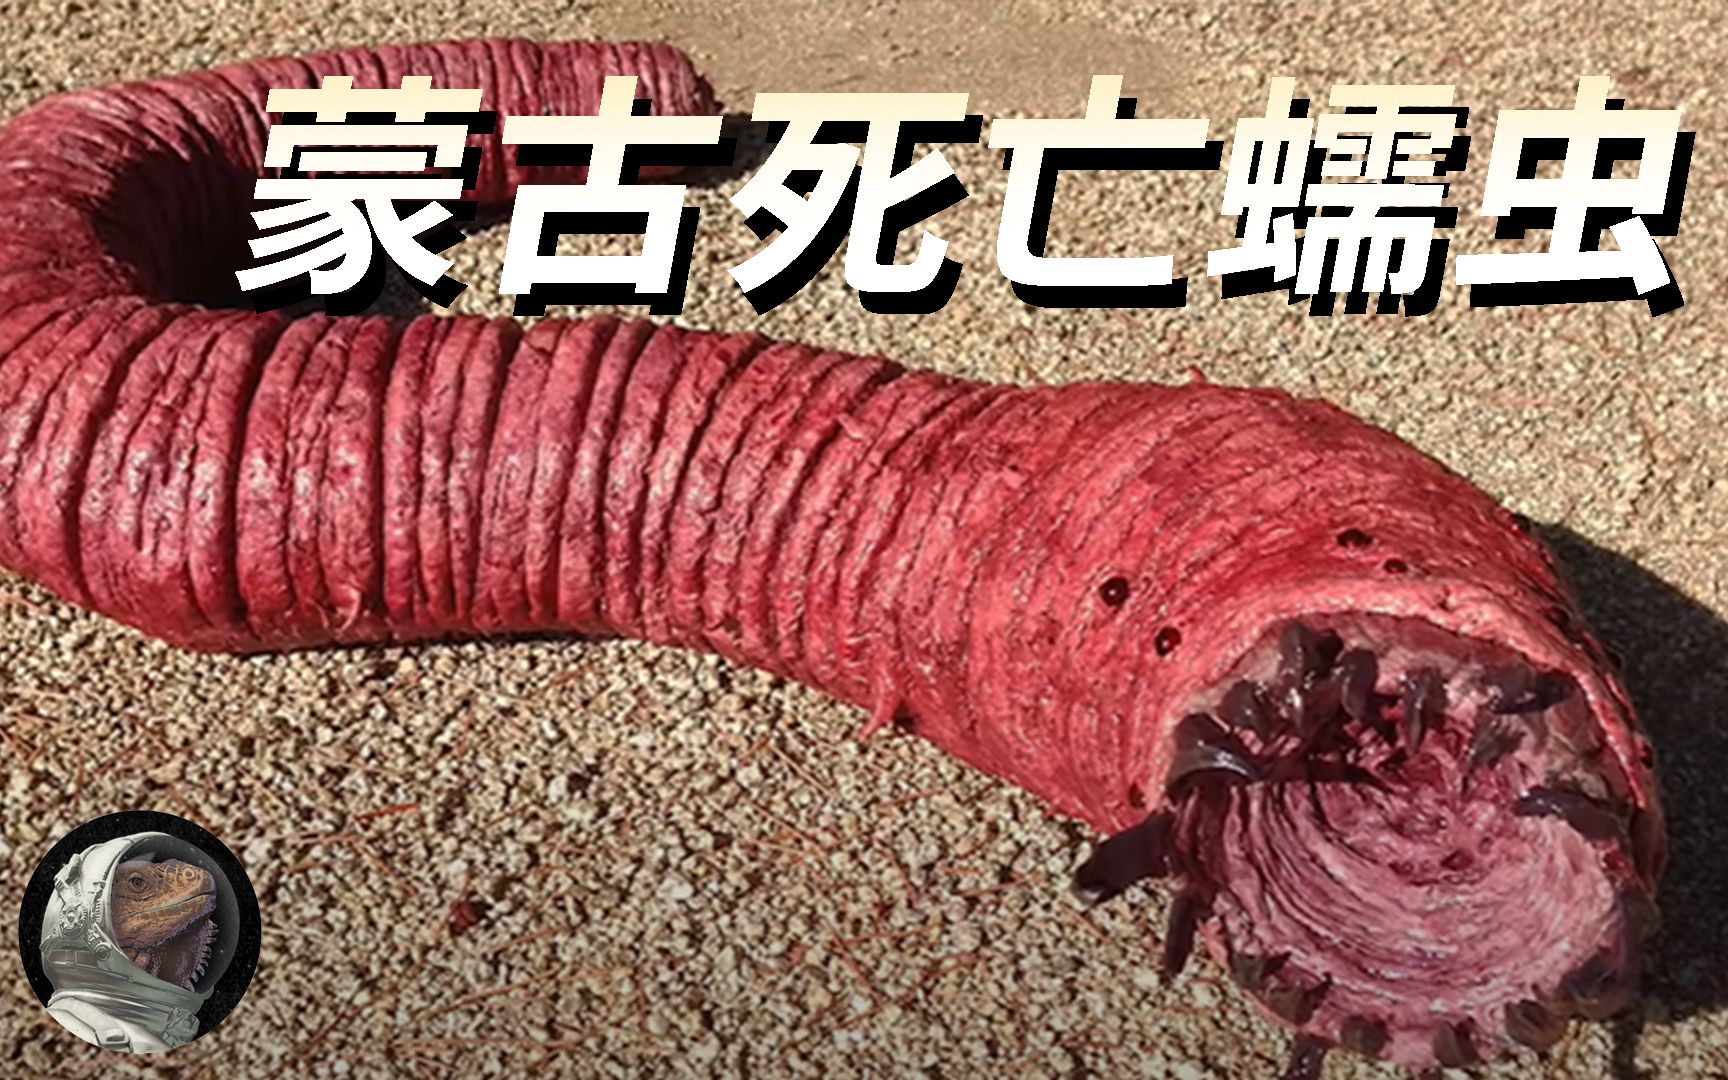 电影《沙丘》中巨型沙虫的原型，传说中的神秘生物—蒙古死亡蠕虫 【世奇研究所】